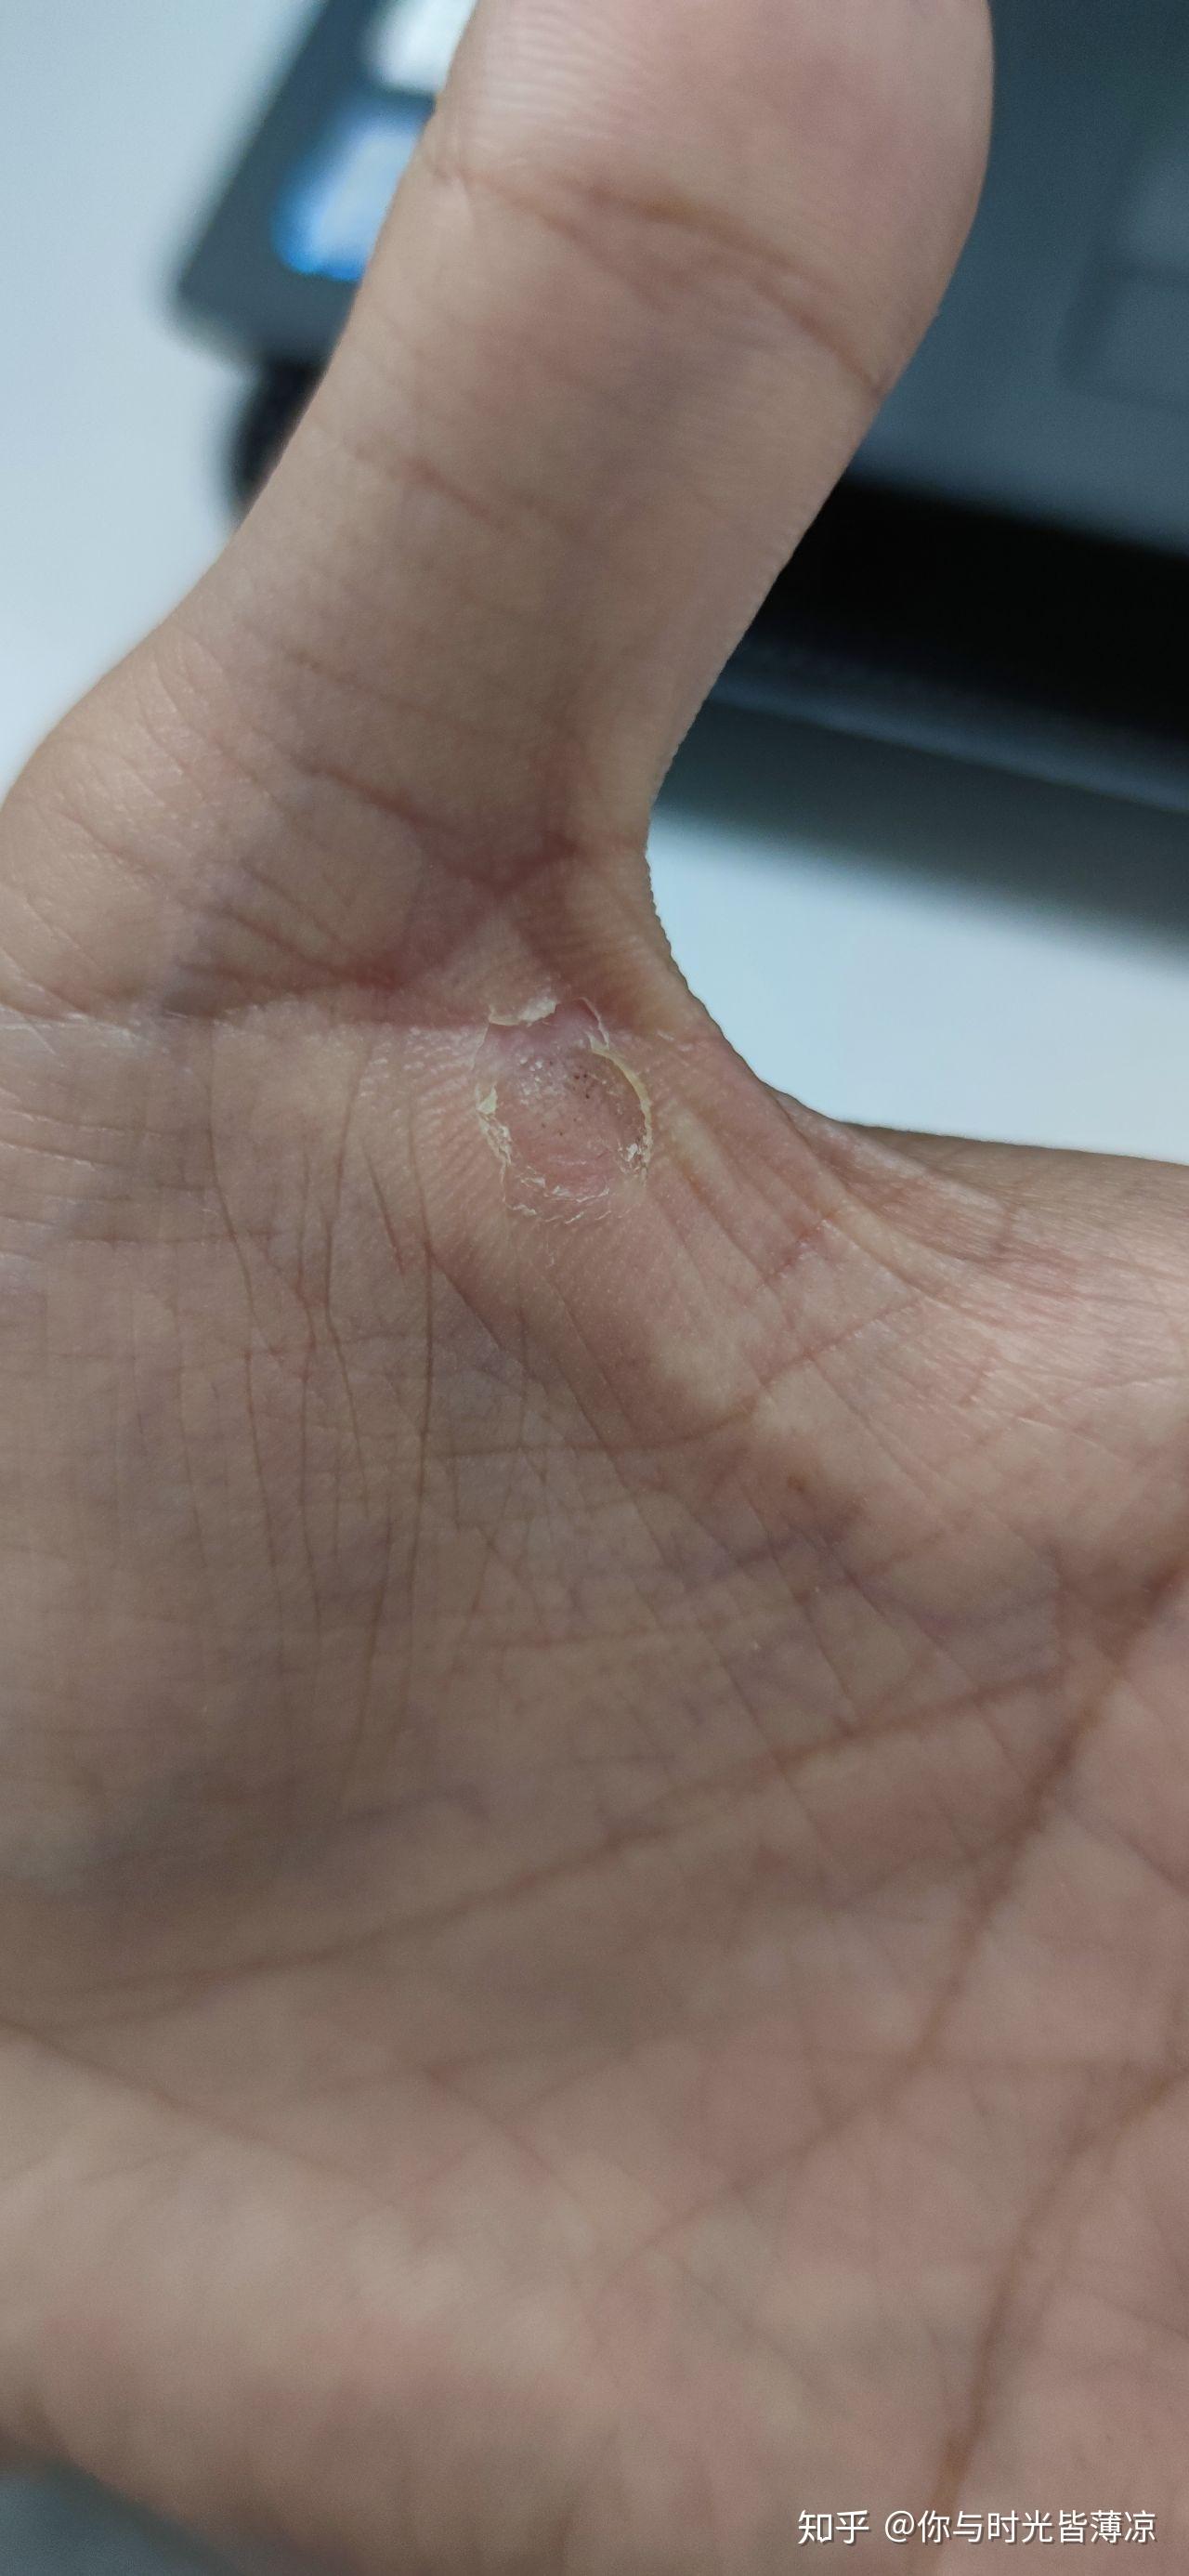 液氮冷冻治疗后手指上出了血泡而且越来越大该怎么办? 